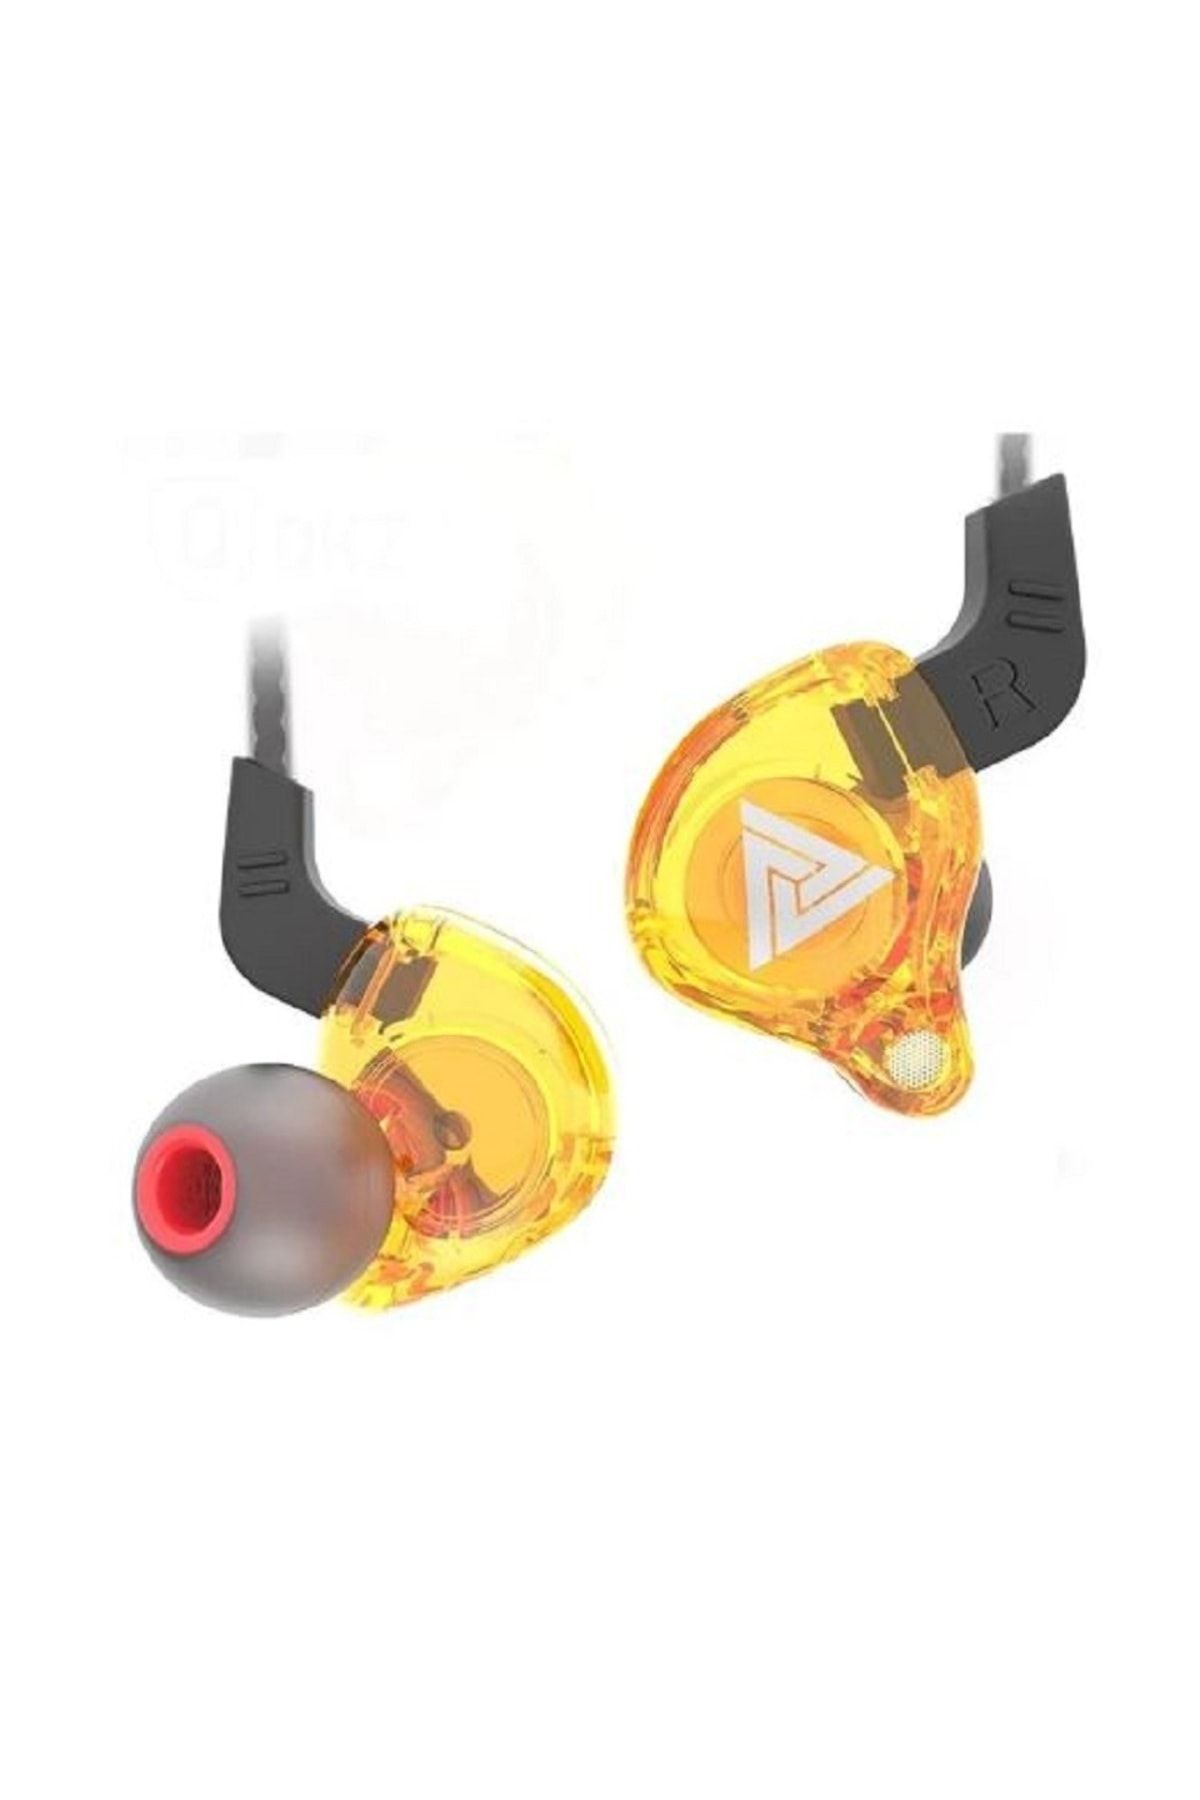 Duen Qkz Hi-res Audio Kablolu Kulaklık Hifi Spor Kulaklıkları - Mikrofonlu Kulaklık Oyun -telefon Bass